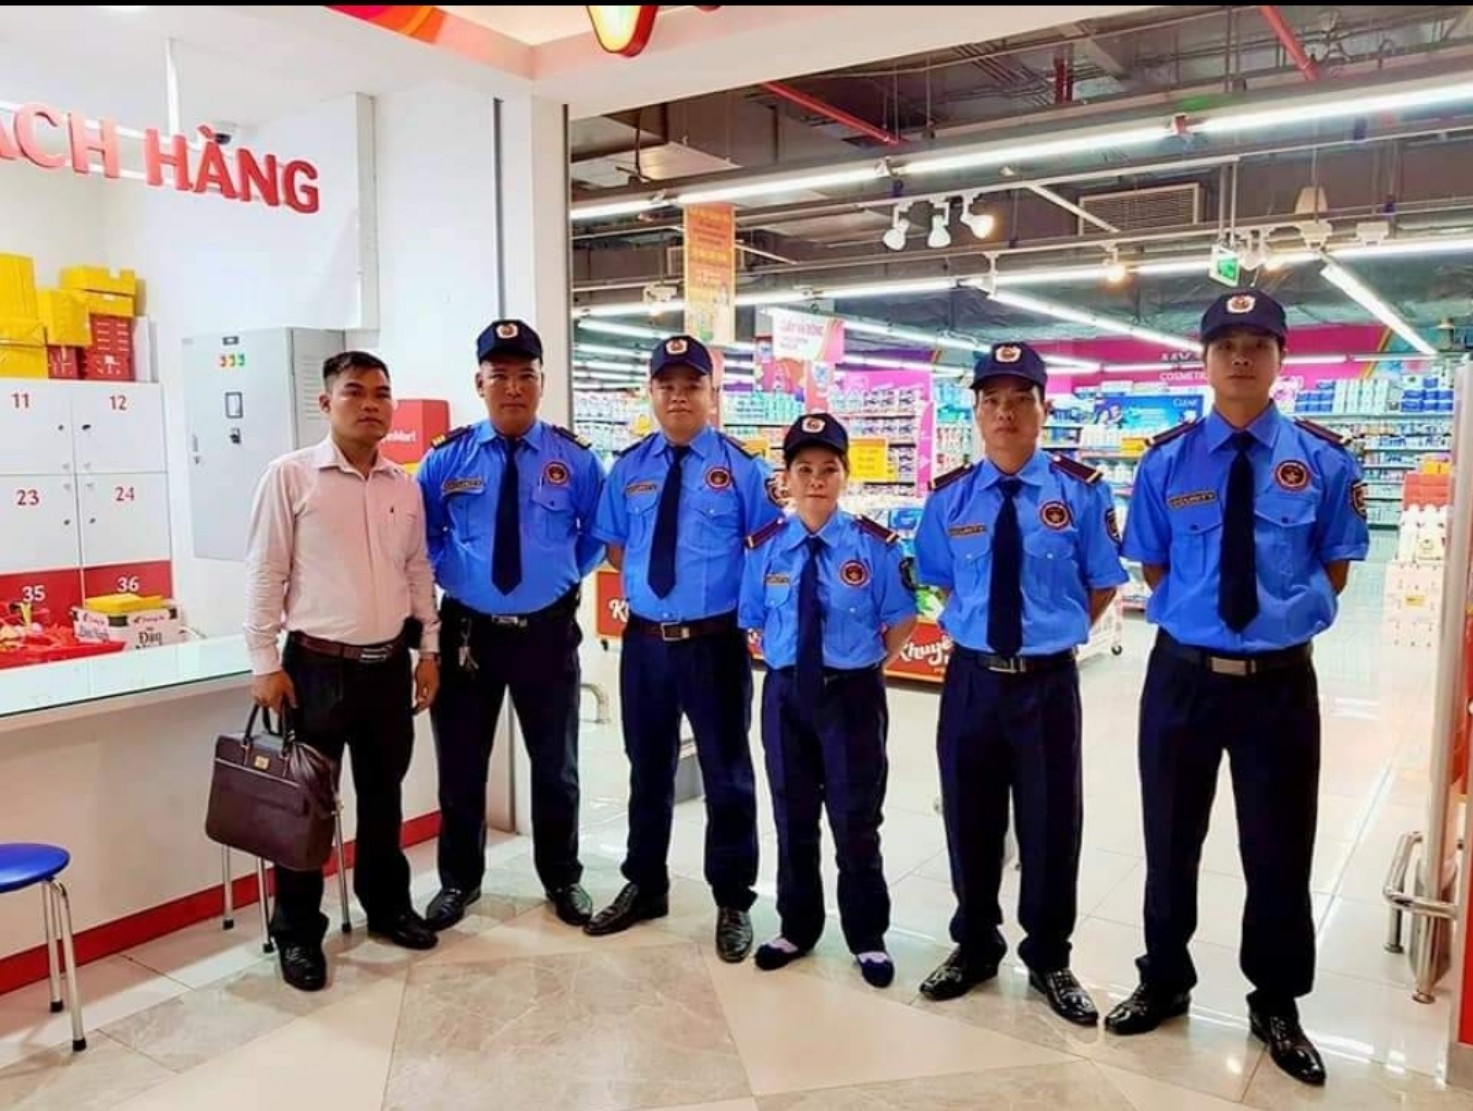 Cách thuê công ty bảo vệ chuyên nghiệp, uy tín, chất lượng tại Đà Nẵng?